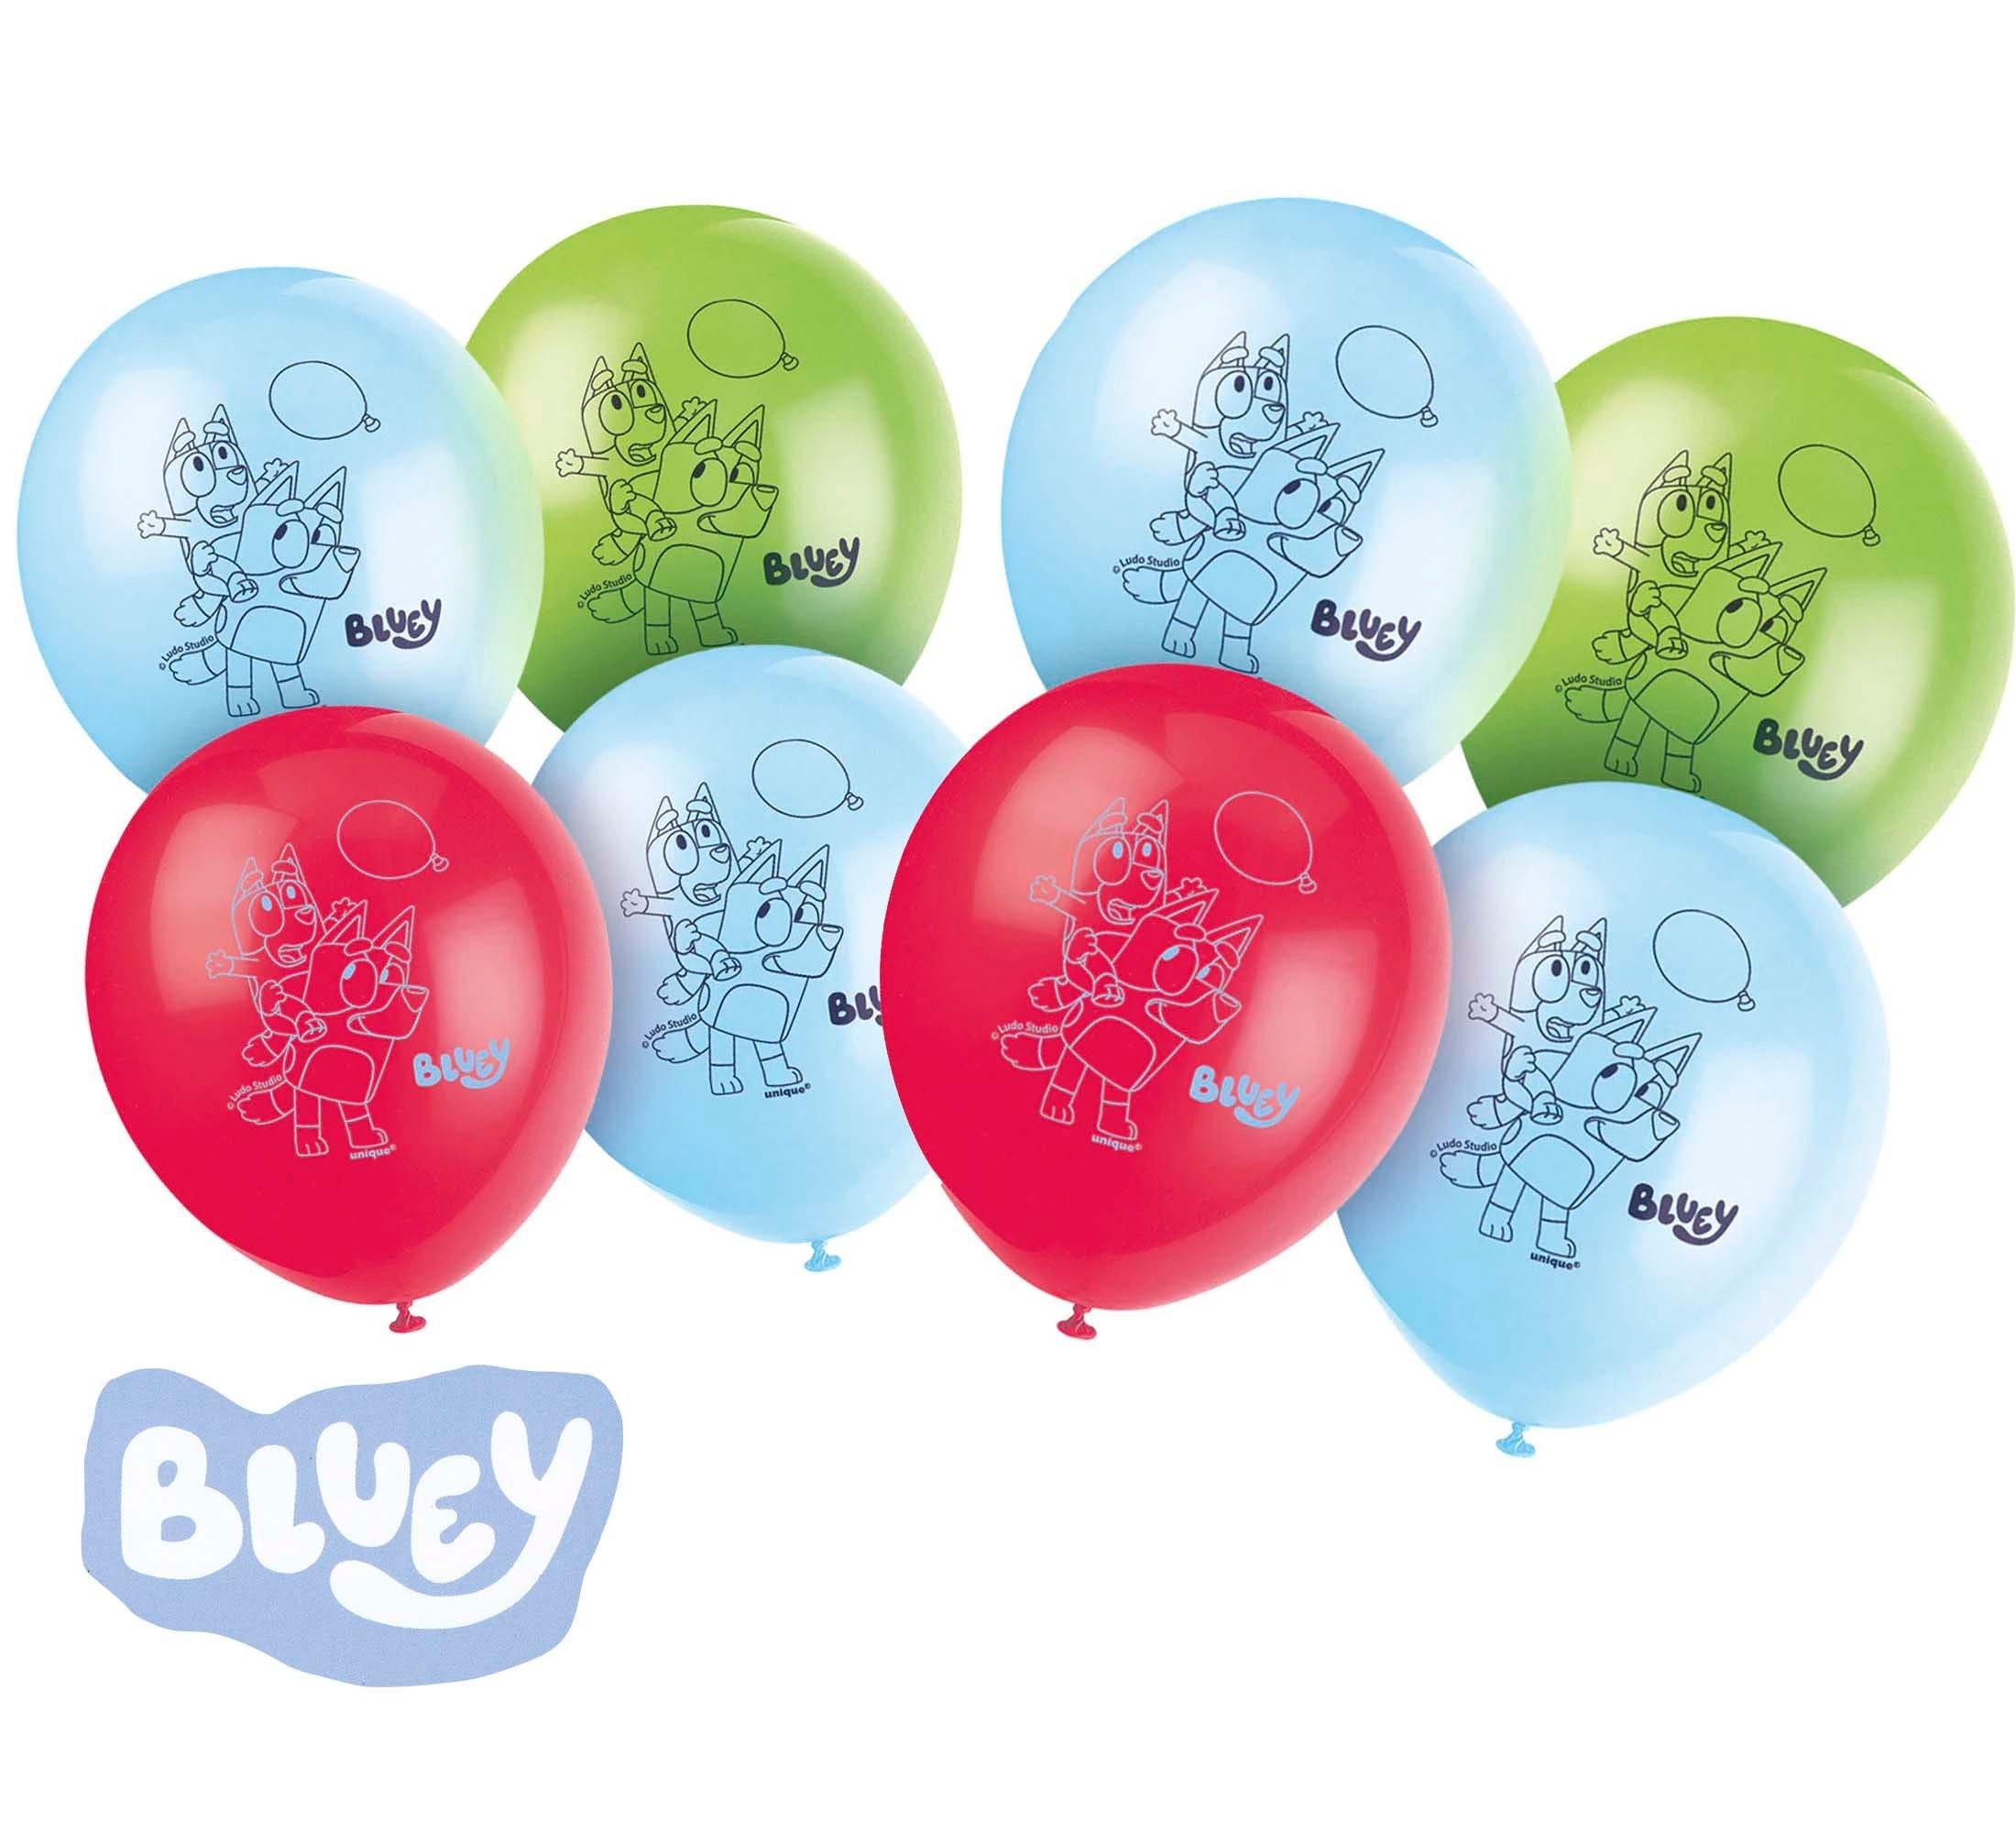 8 Bluey Birthday Balloons , Bluey Birthday, Bluey and Bingo Decoration, Bluey Puppy Birthday, Dog Balloon, Puppy Pawty,Bluey Themed Birthday